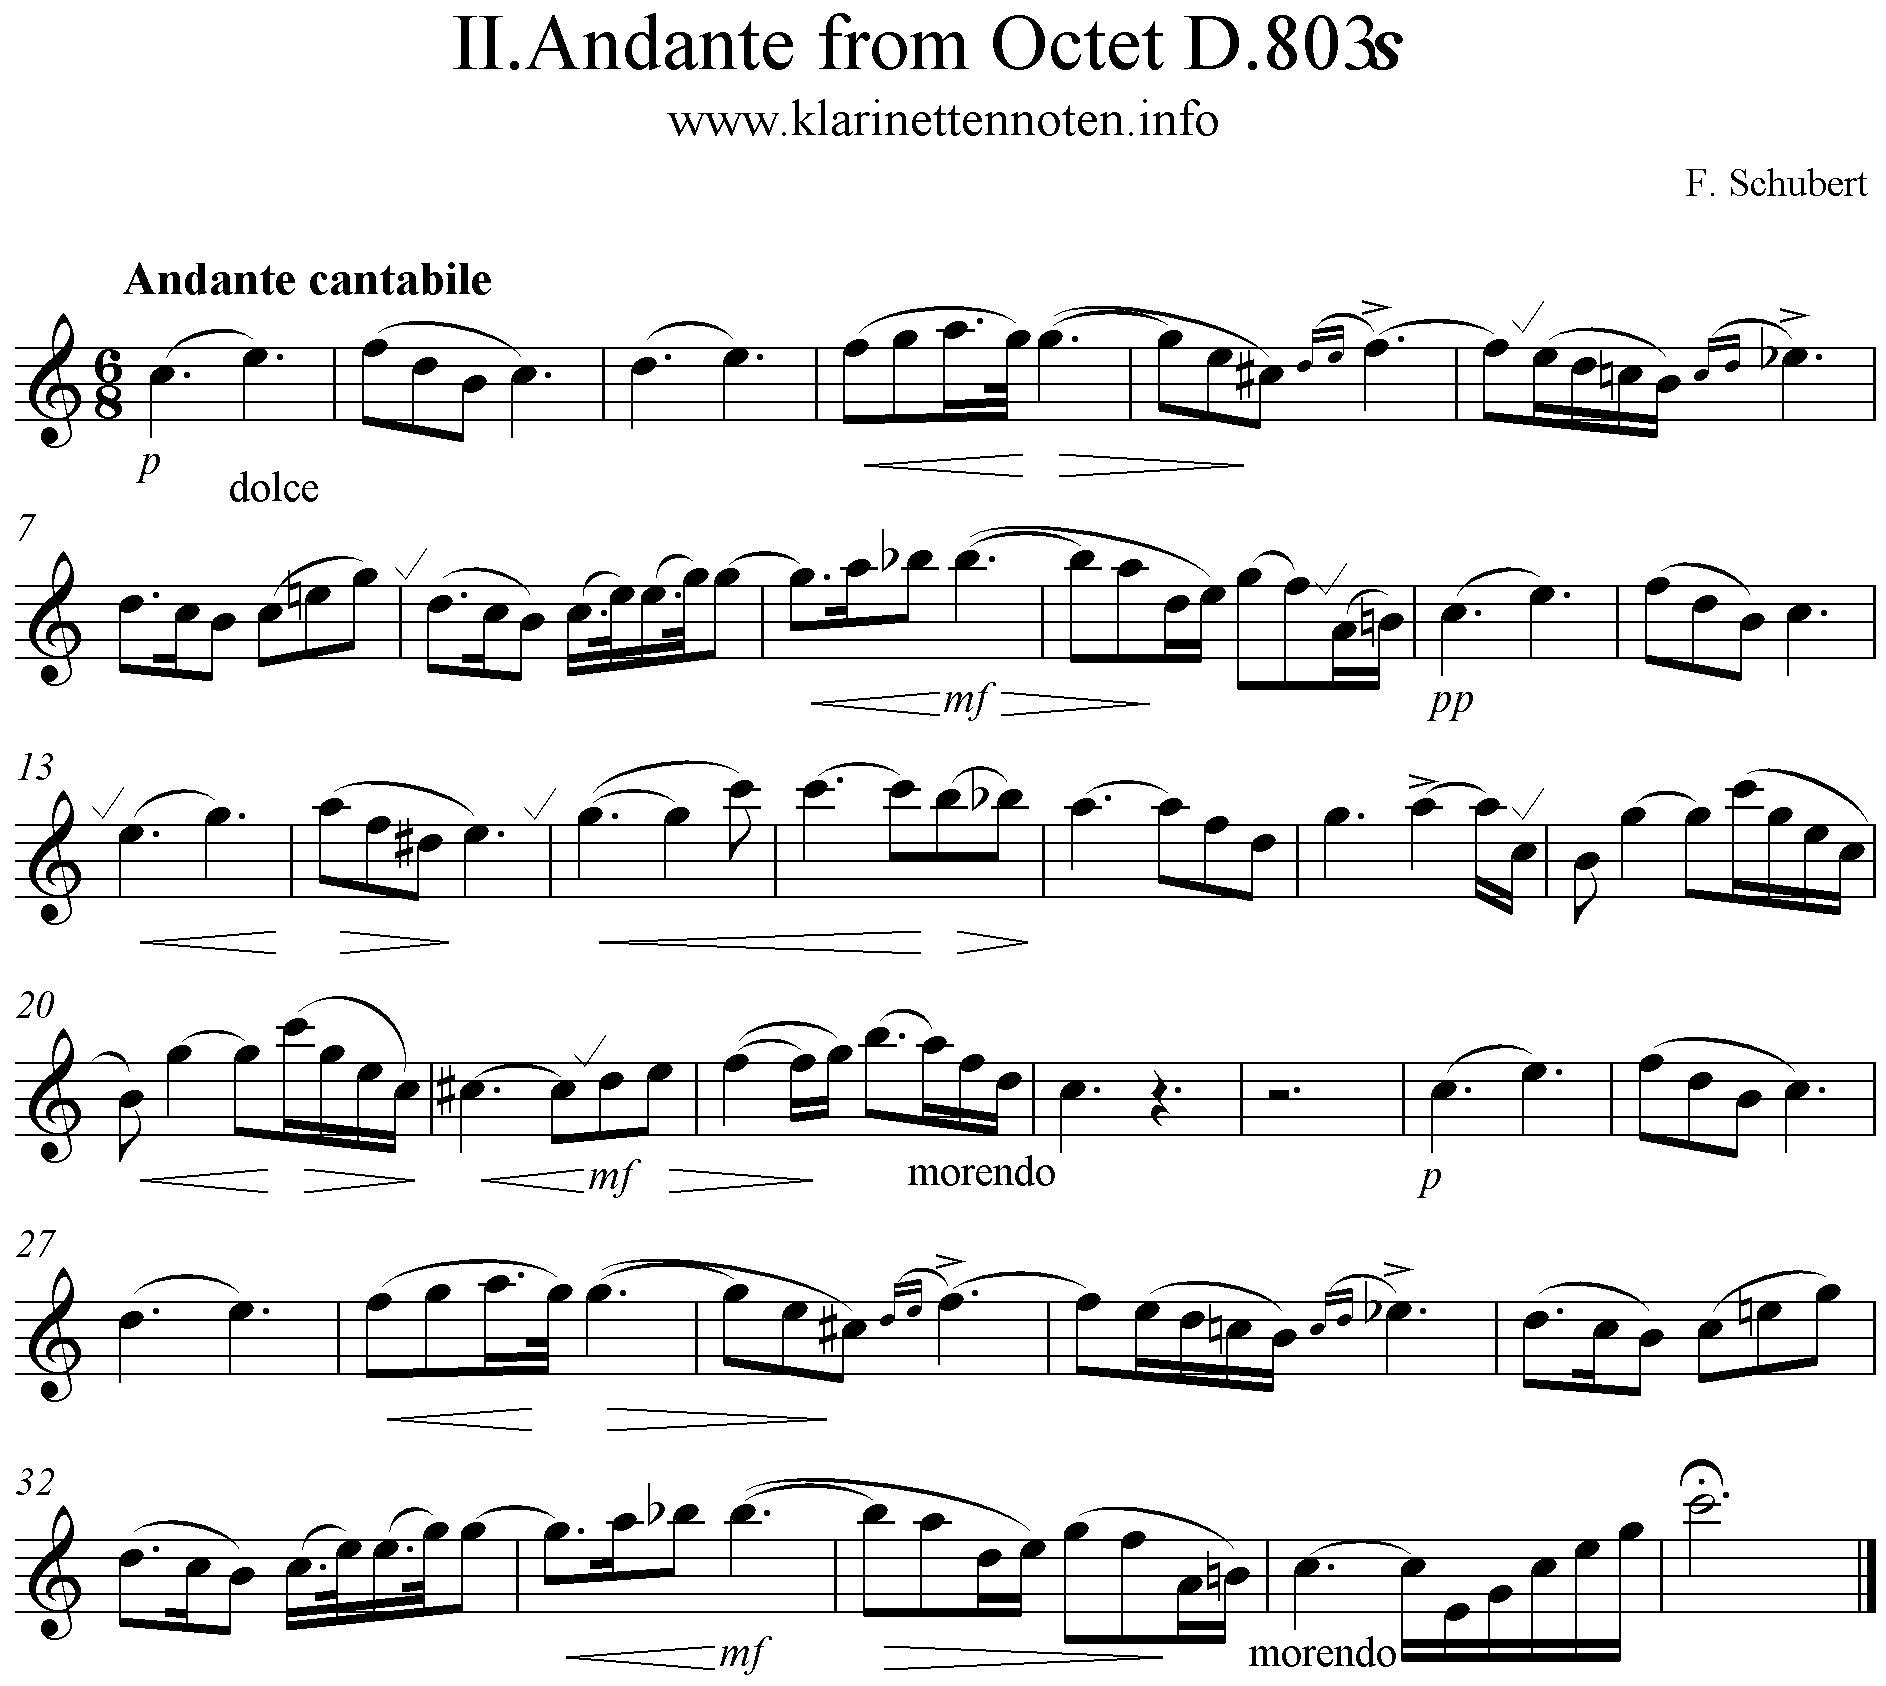 Preghiera, Andante from Octet Schubert  D803